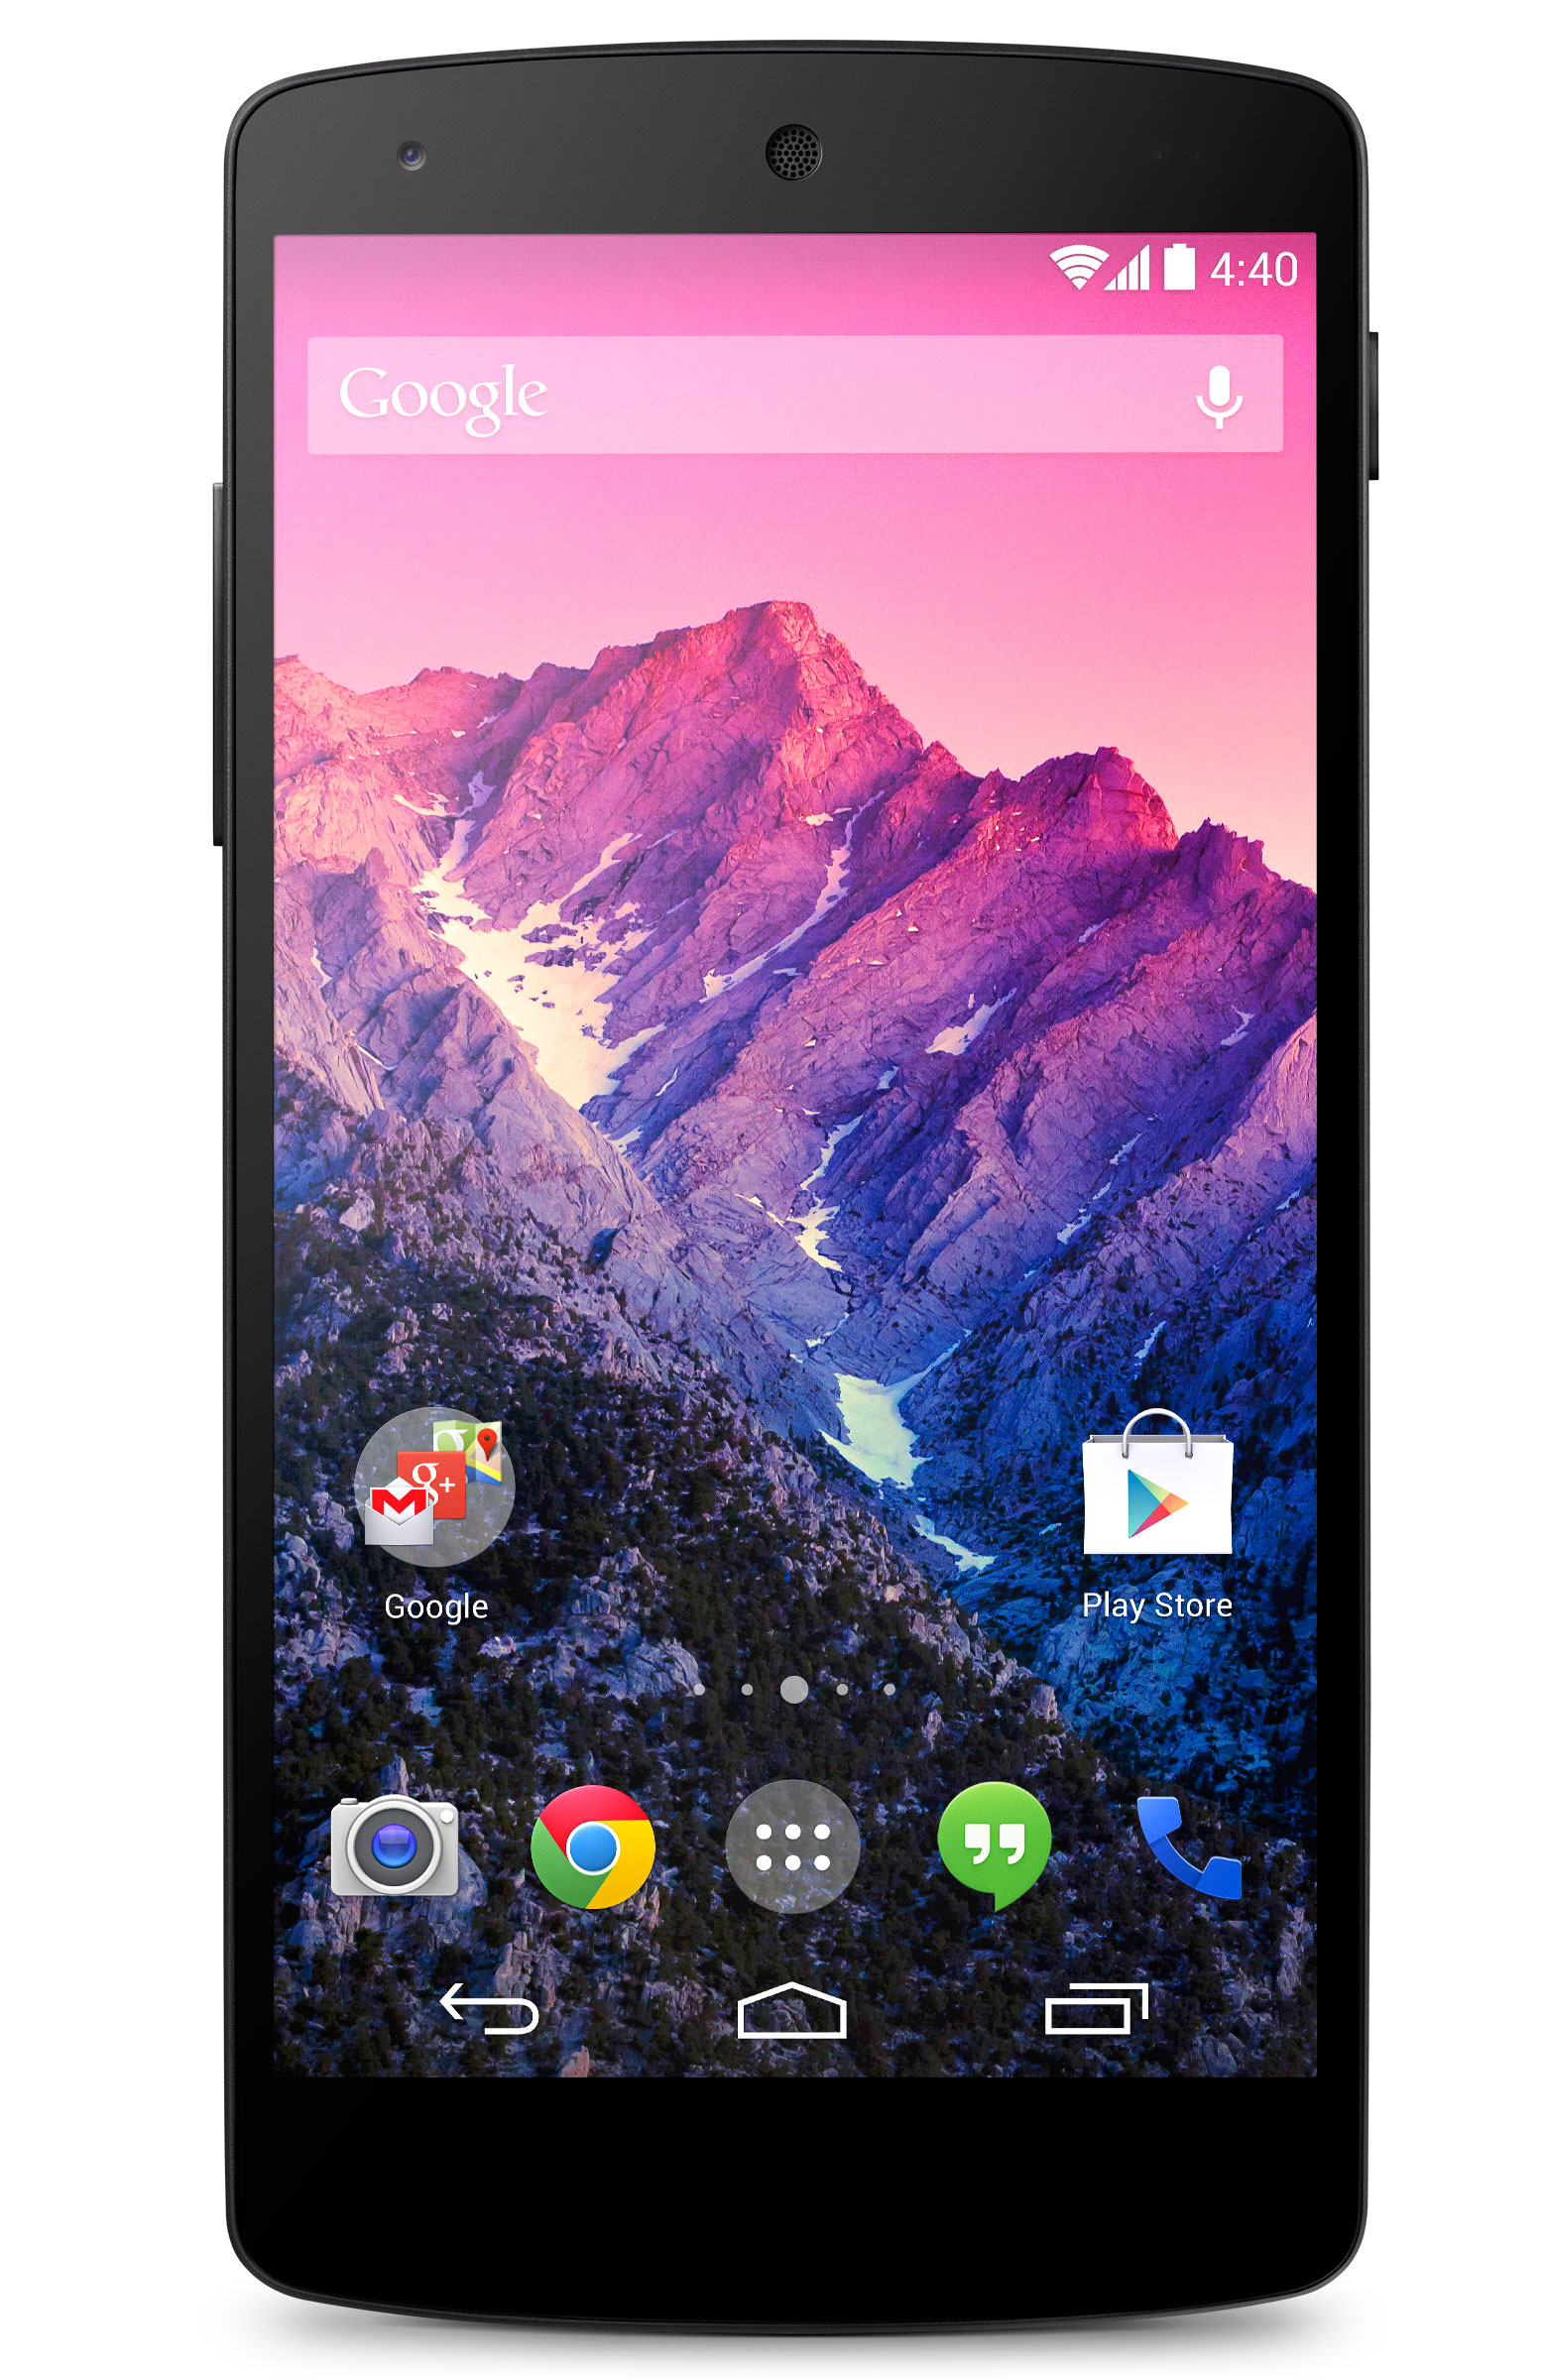 Immagine pubblicata in relazione al seguente contenuto: Google lancia lo smartphone Nexus 5 e l'OS Android 4.4 KitKat | Nome immagine: news20294_Google-Nexus-5_11.jpg